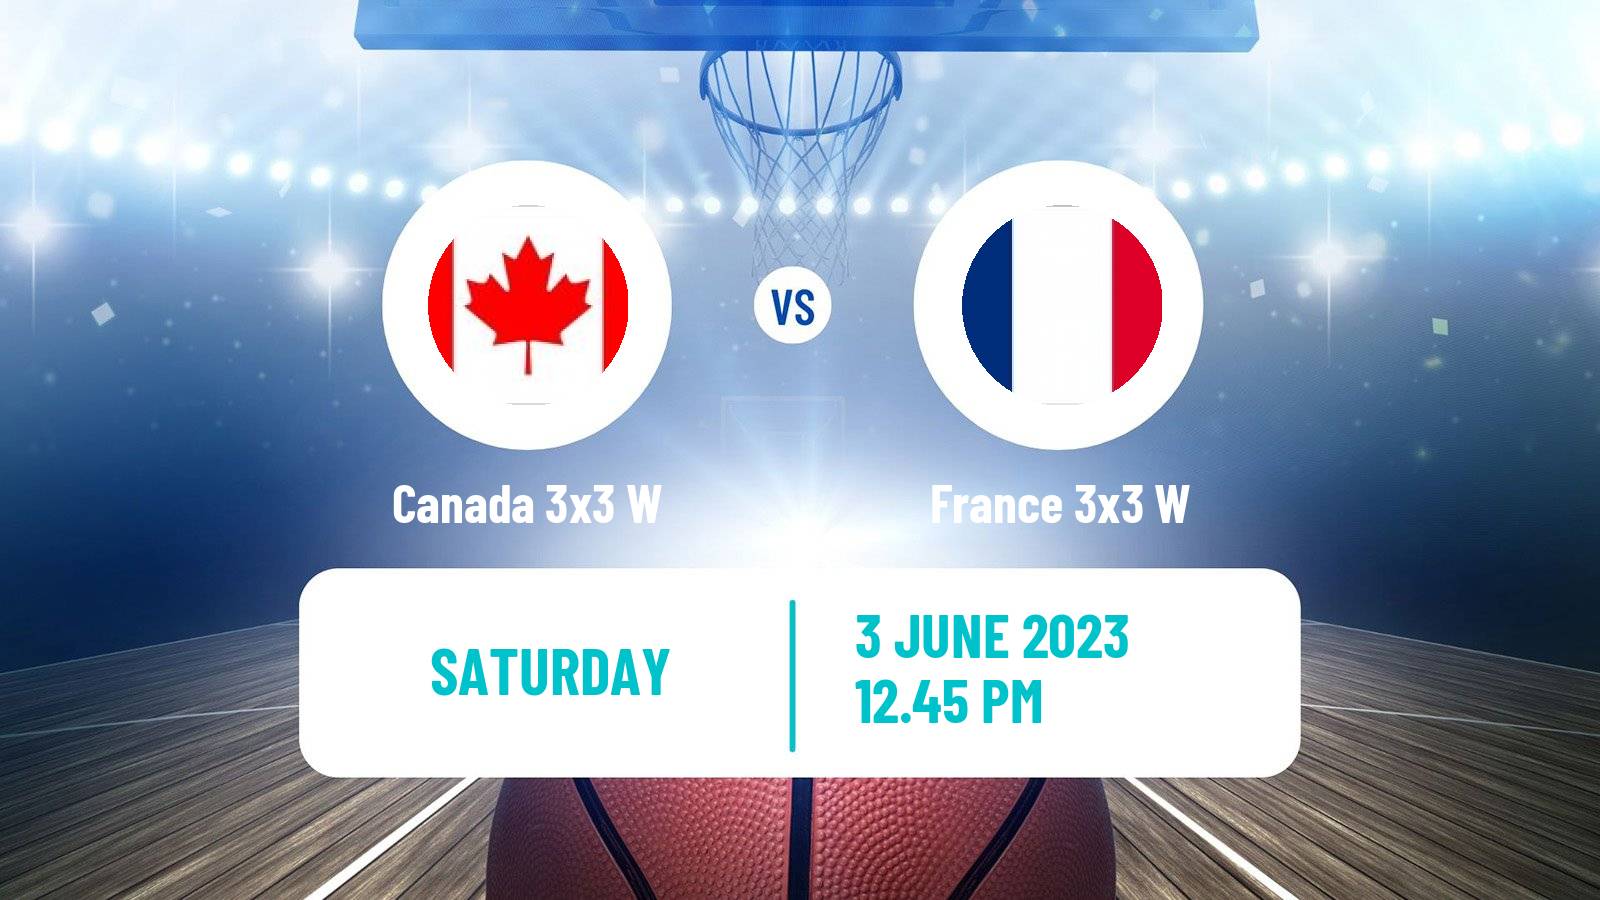 Basketball World Cup Basketball 3x3 Women Canada 3x3 W - France 3x3 W